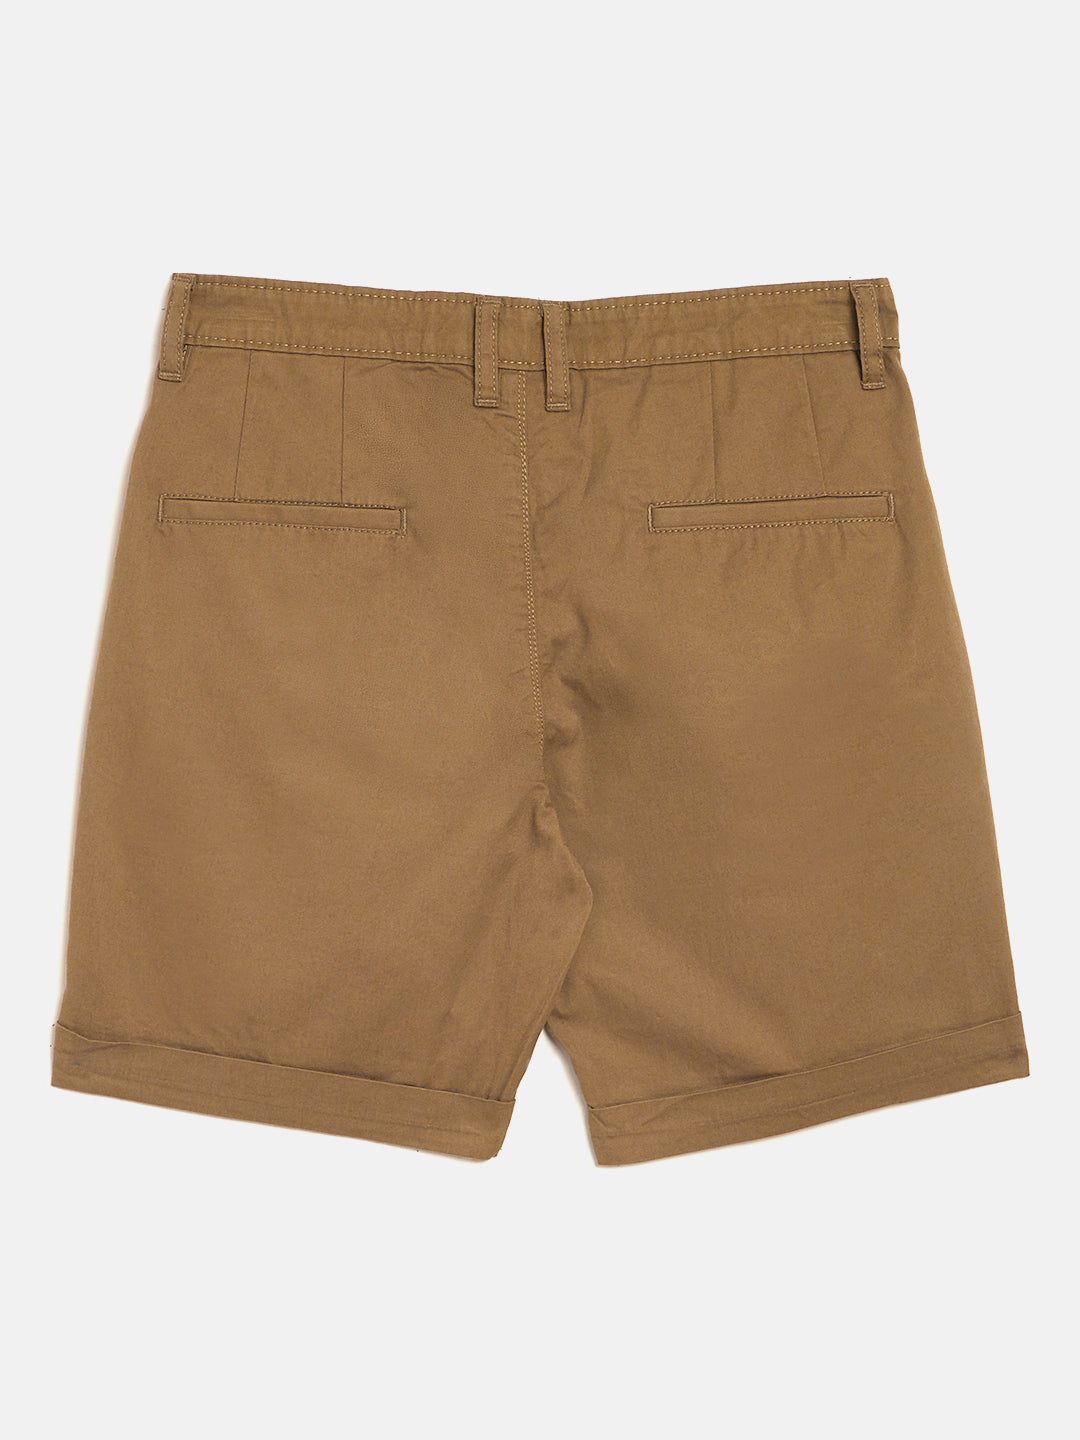 Khaki Slim Fit Shorts - Boys Shorts